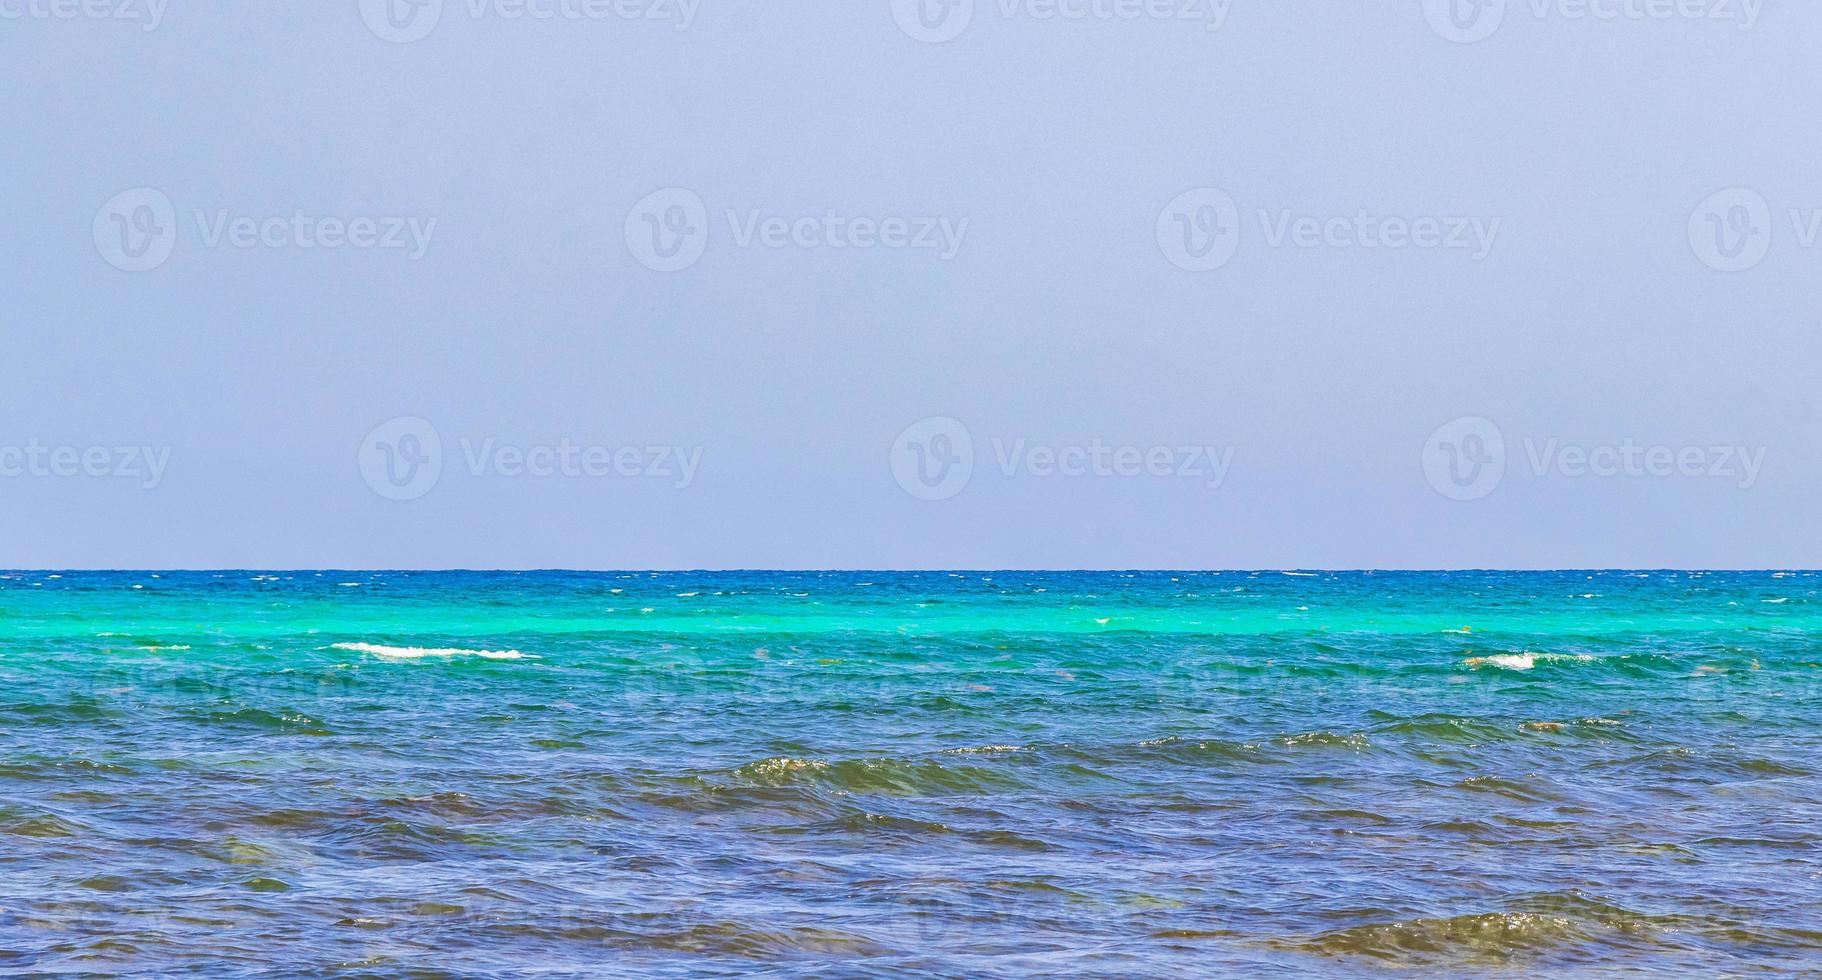 playa tropical mexicana cenote punta esmeralda playa del carmen mexico. foto